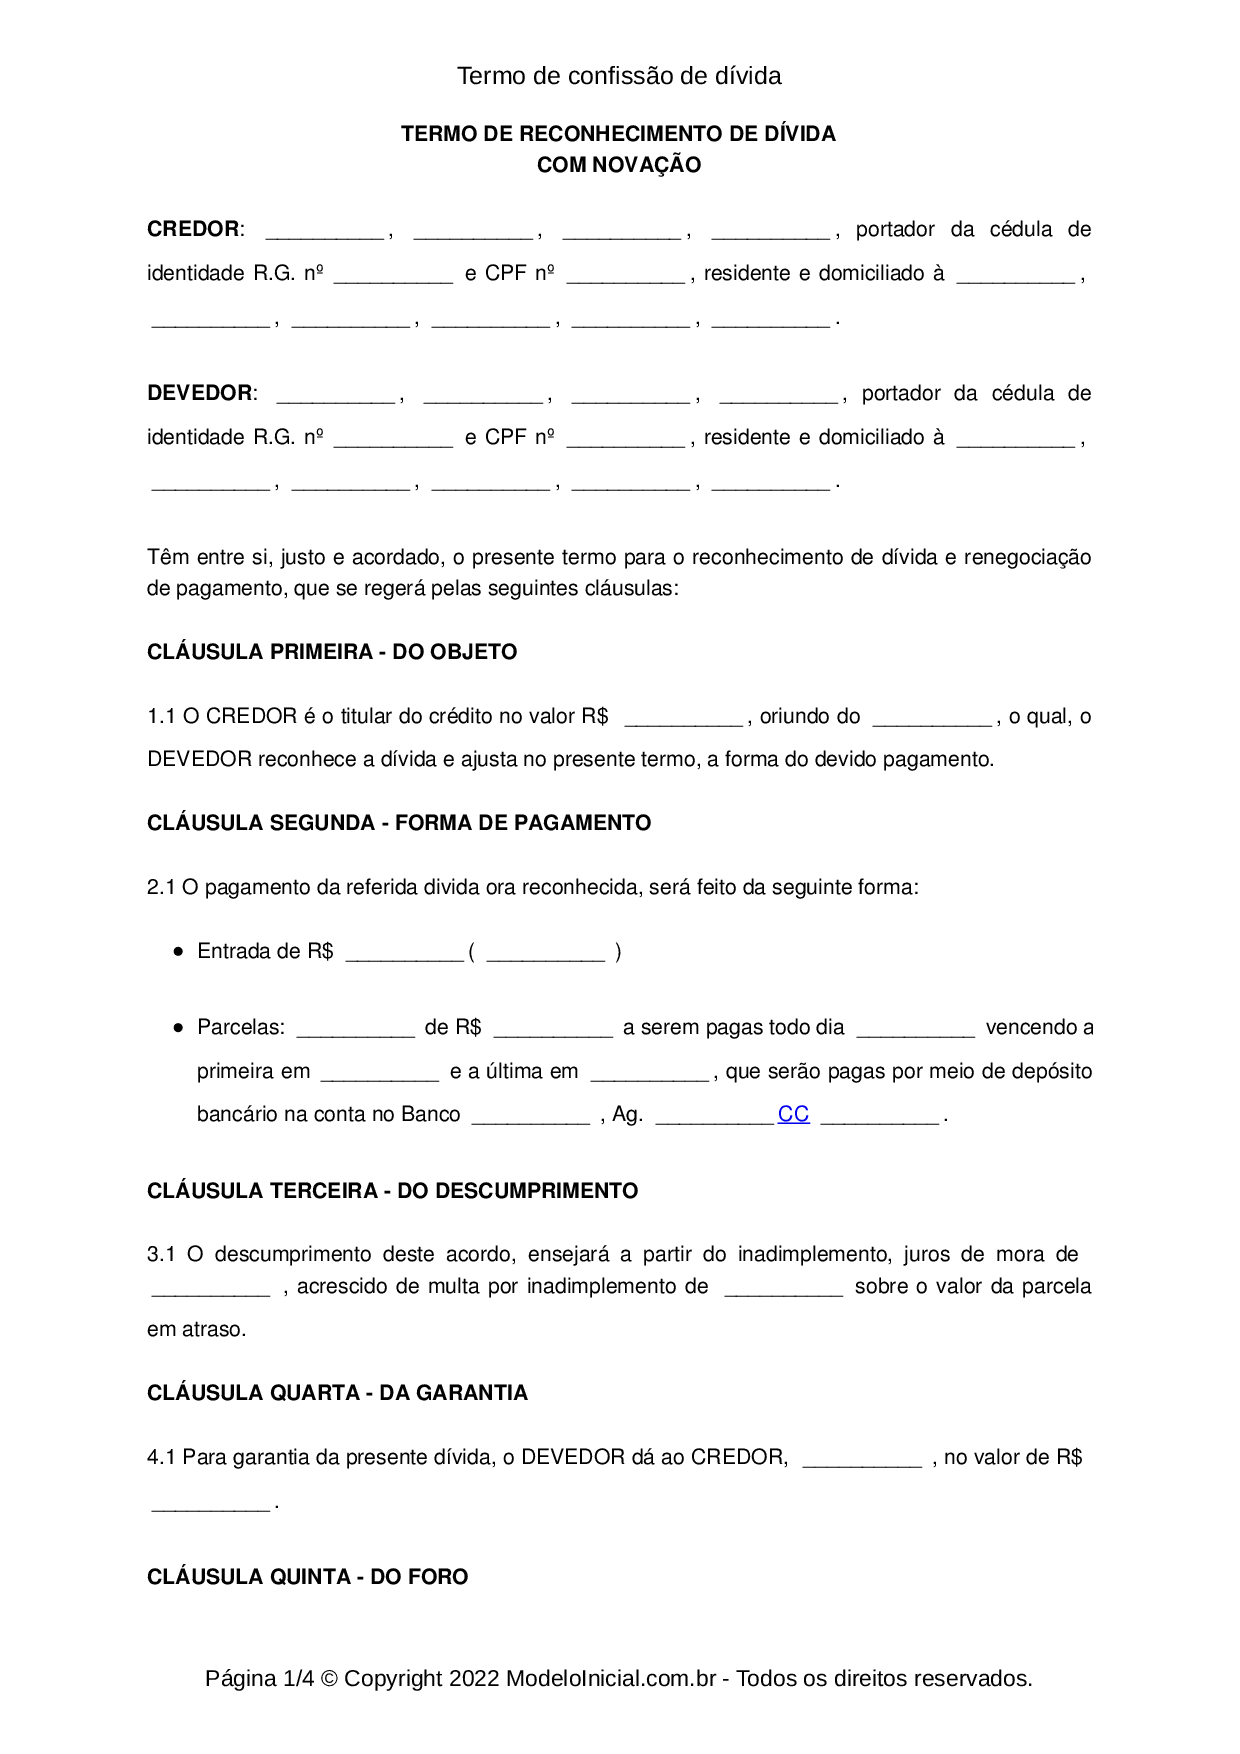 Exemplo De Contrato De Confissão De Divida Novo Exemplo 0322